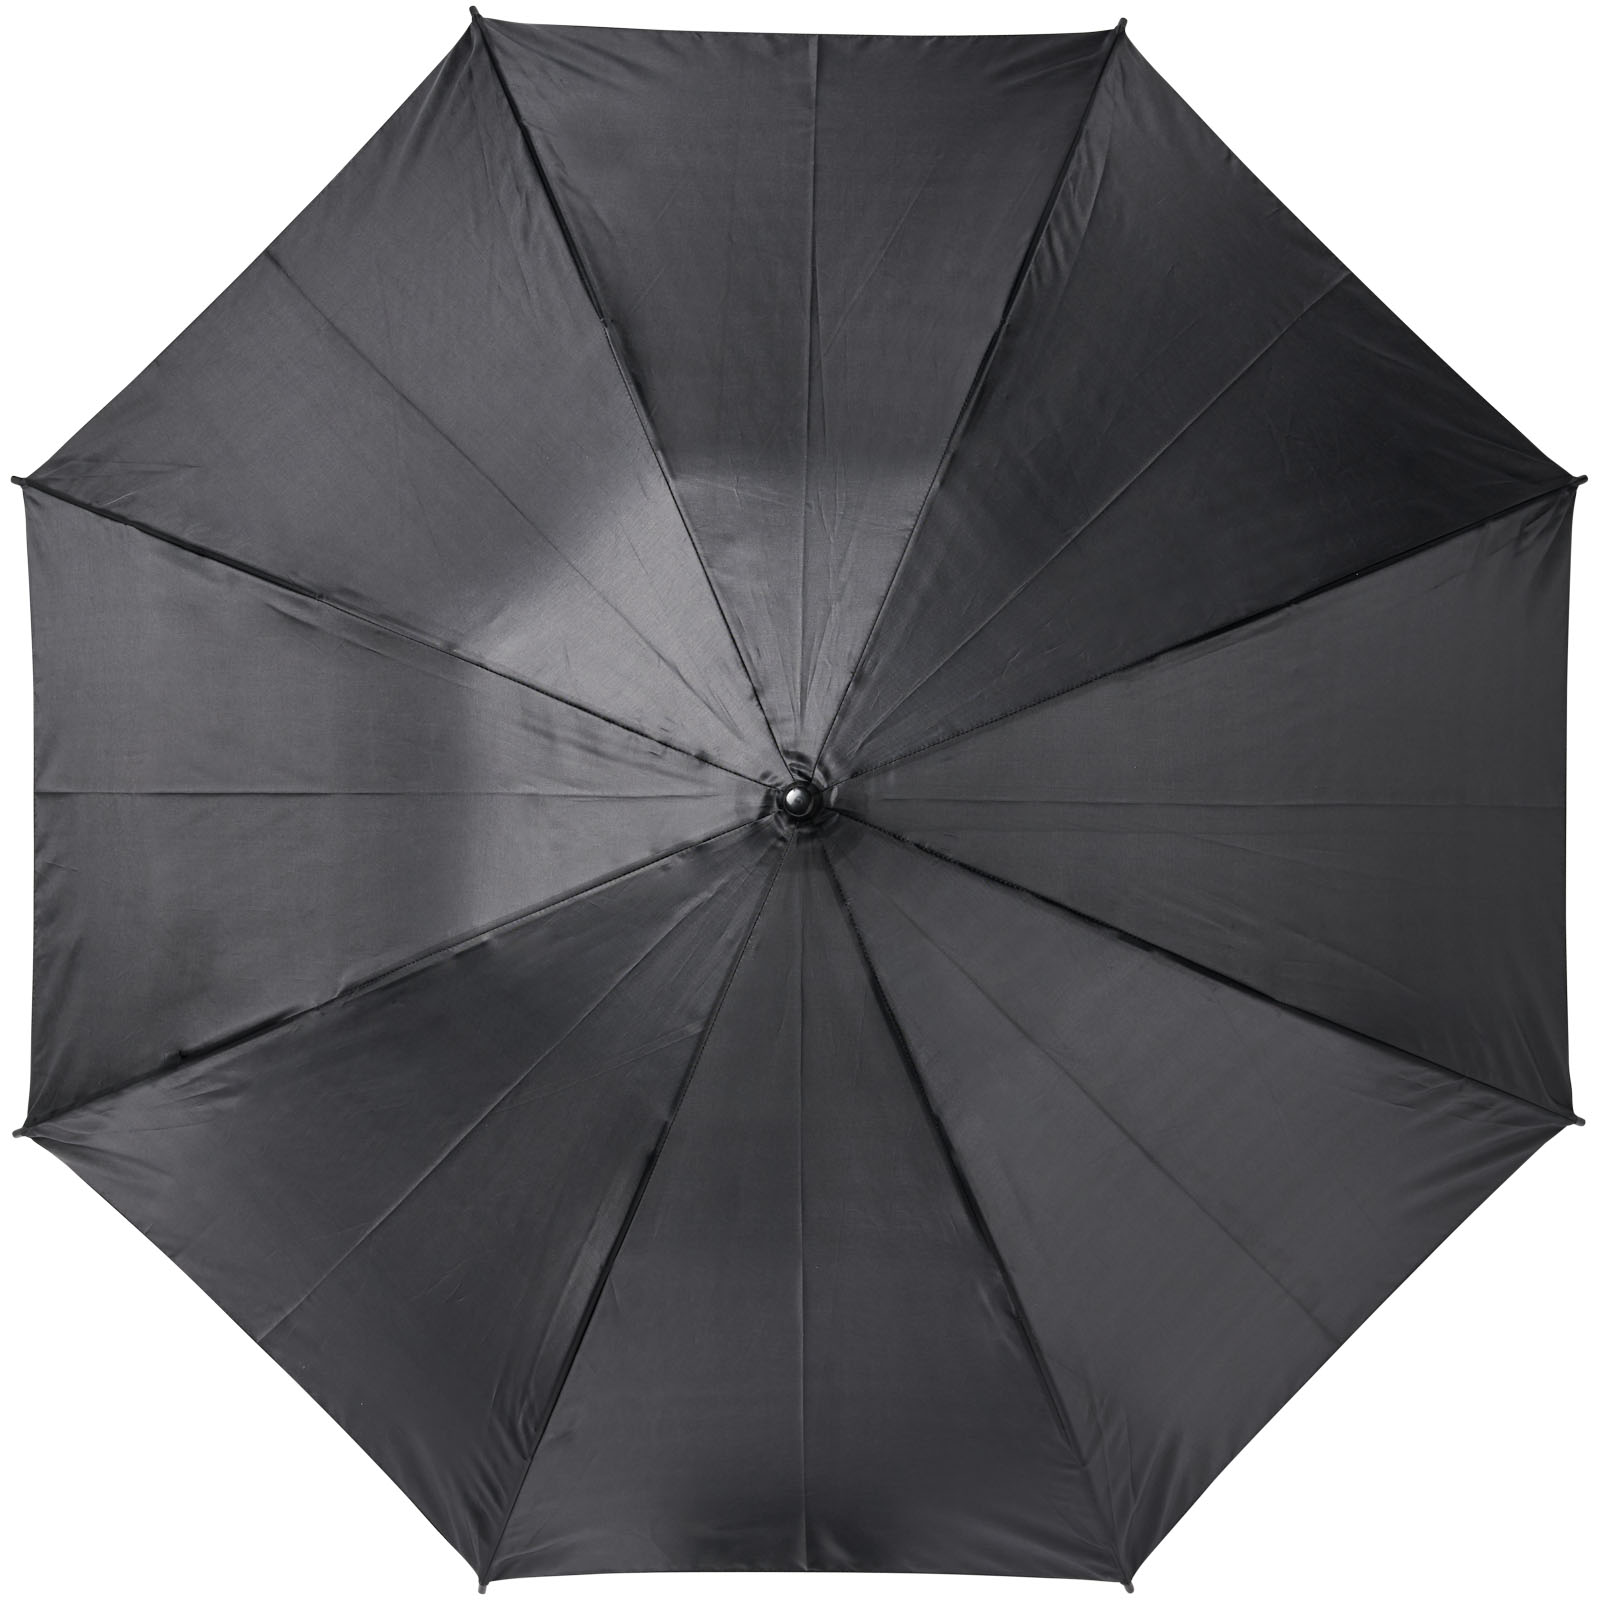 Parapluies tempête publicitaires - Parapluie tempête à ouverture automatique 23